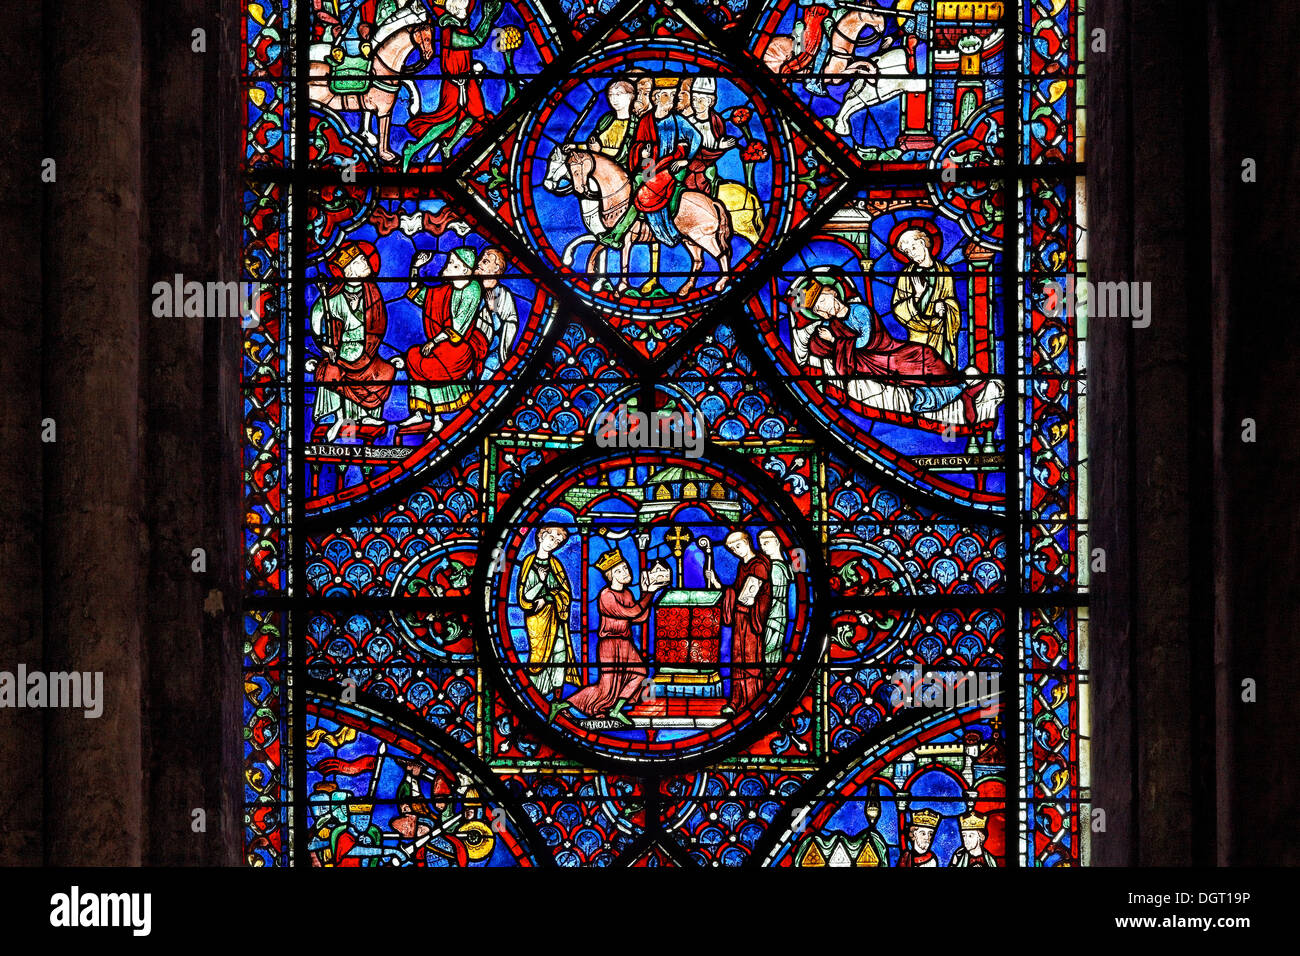 La cathédrale de Chartres, soins ambulatoires, fenêtre de Charles le Grand avec le voyage à Jérusalem et l'expédition d'Espagne Banque D'Images